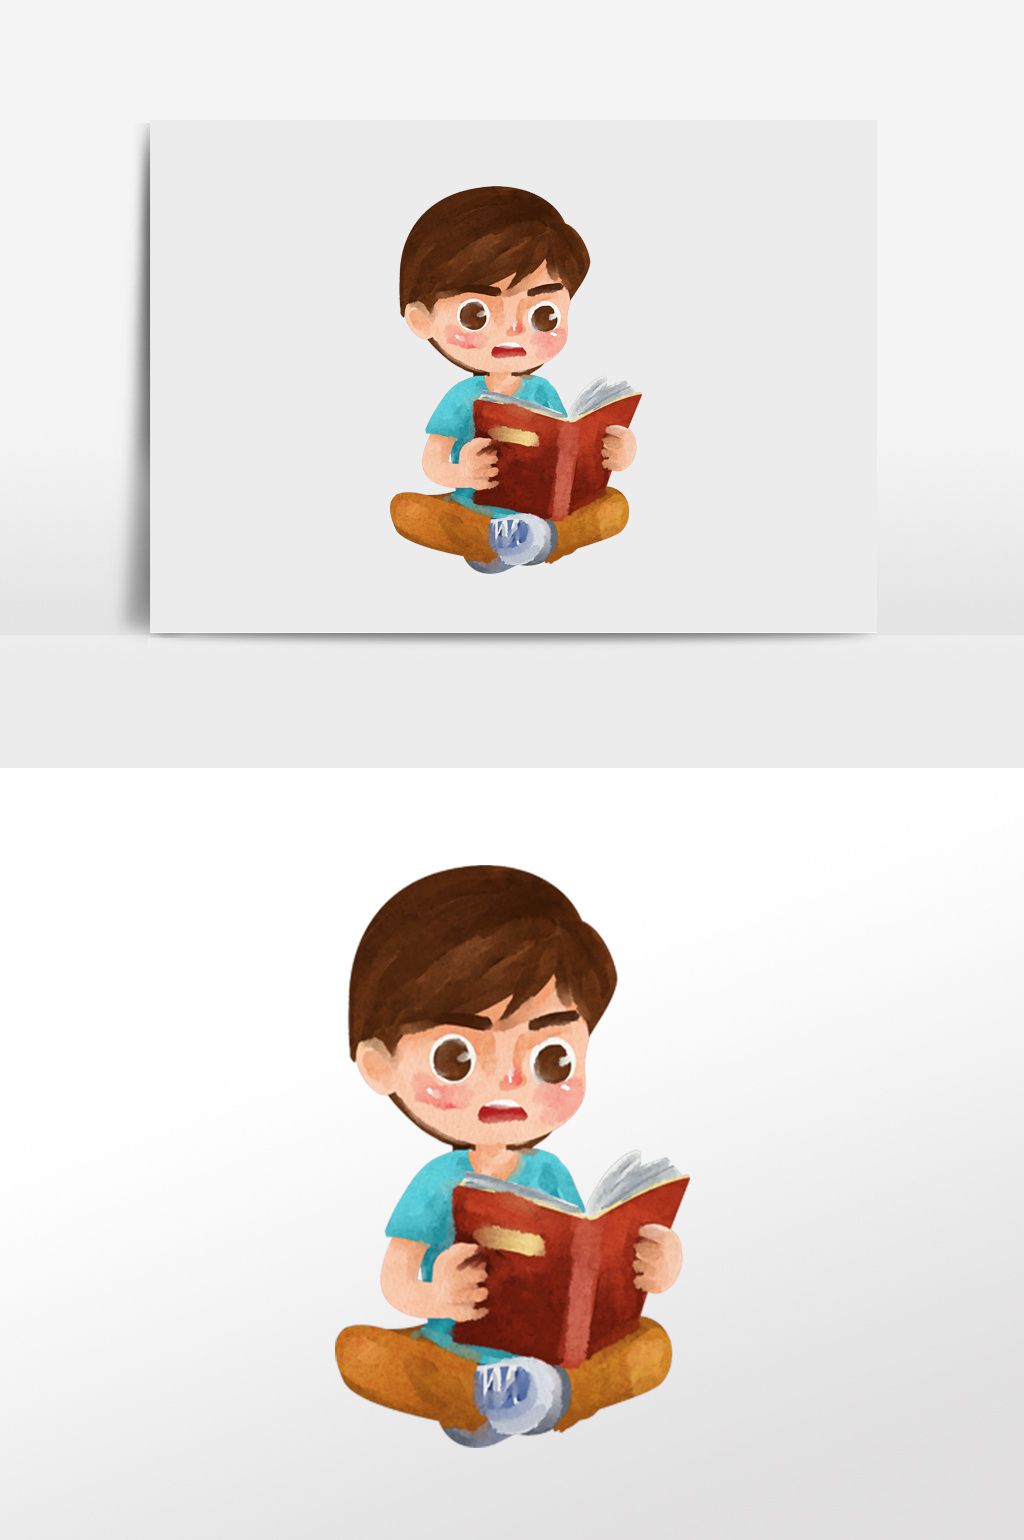 包图 插画 背景素材 【psd】 水彩手绘元素坐着拿着书本认真读书的